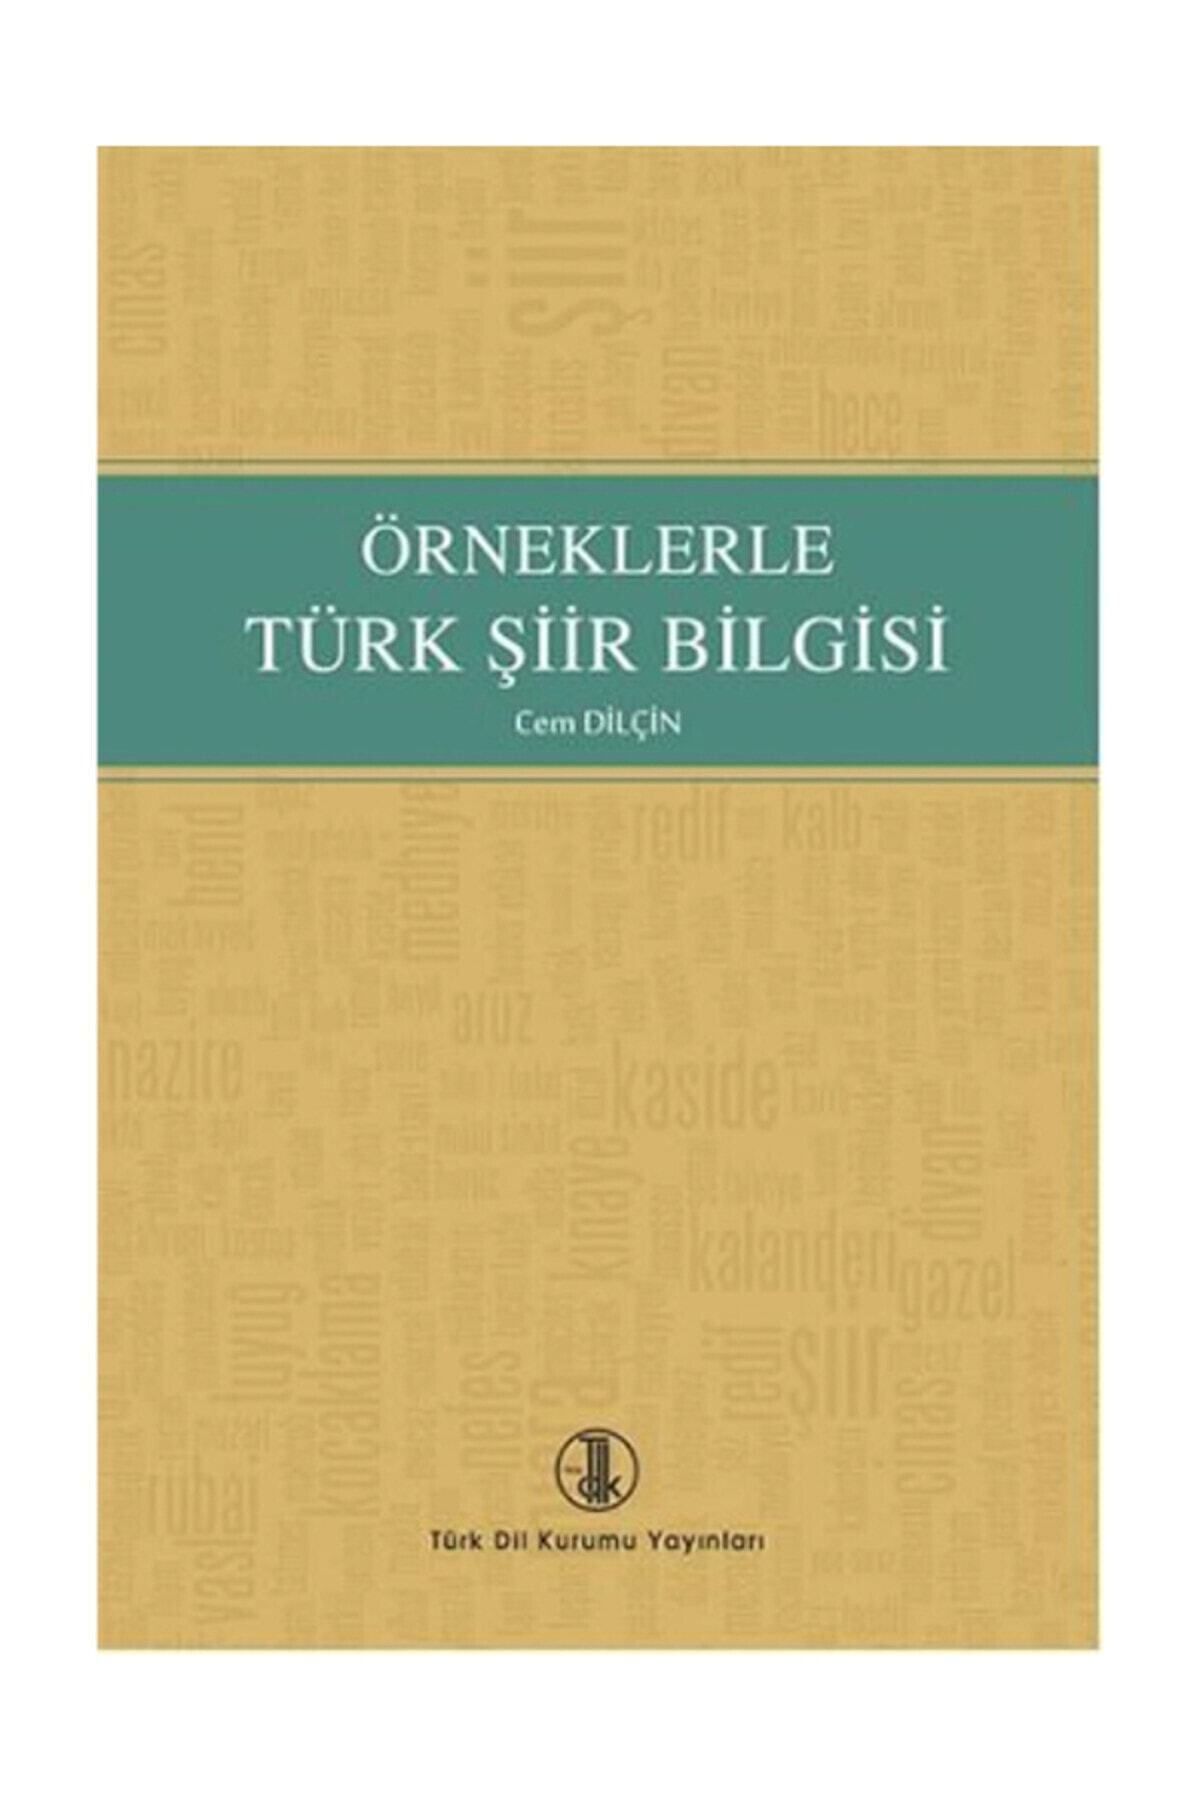 Türk Dil Kurumu Yayınları Örneklerle Türk Şiir Bilgisi Cem Dilçin,